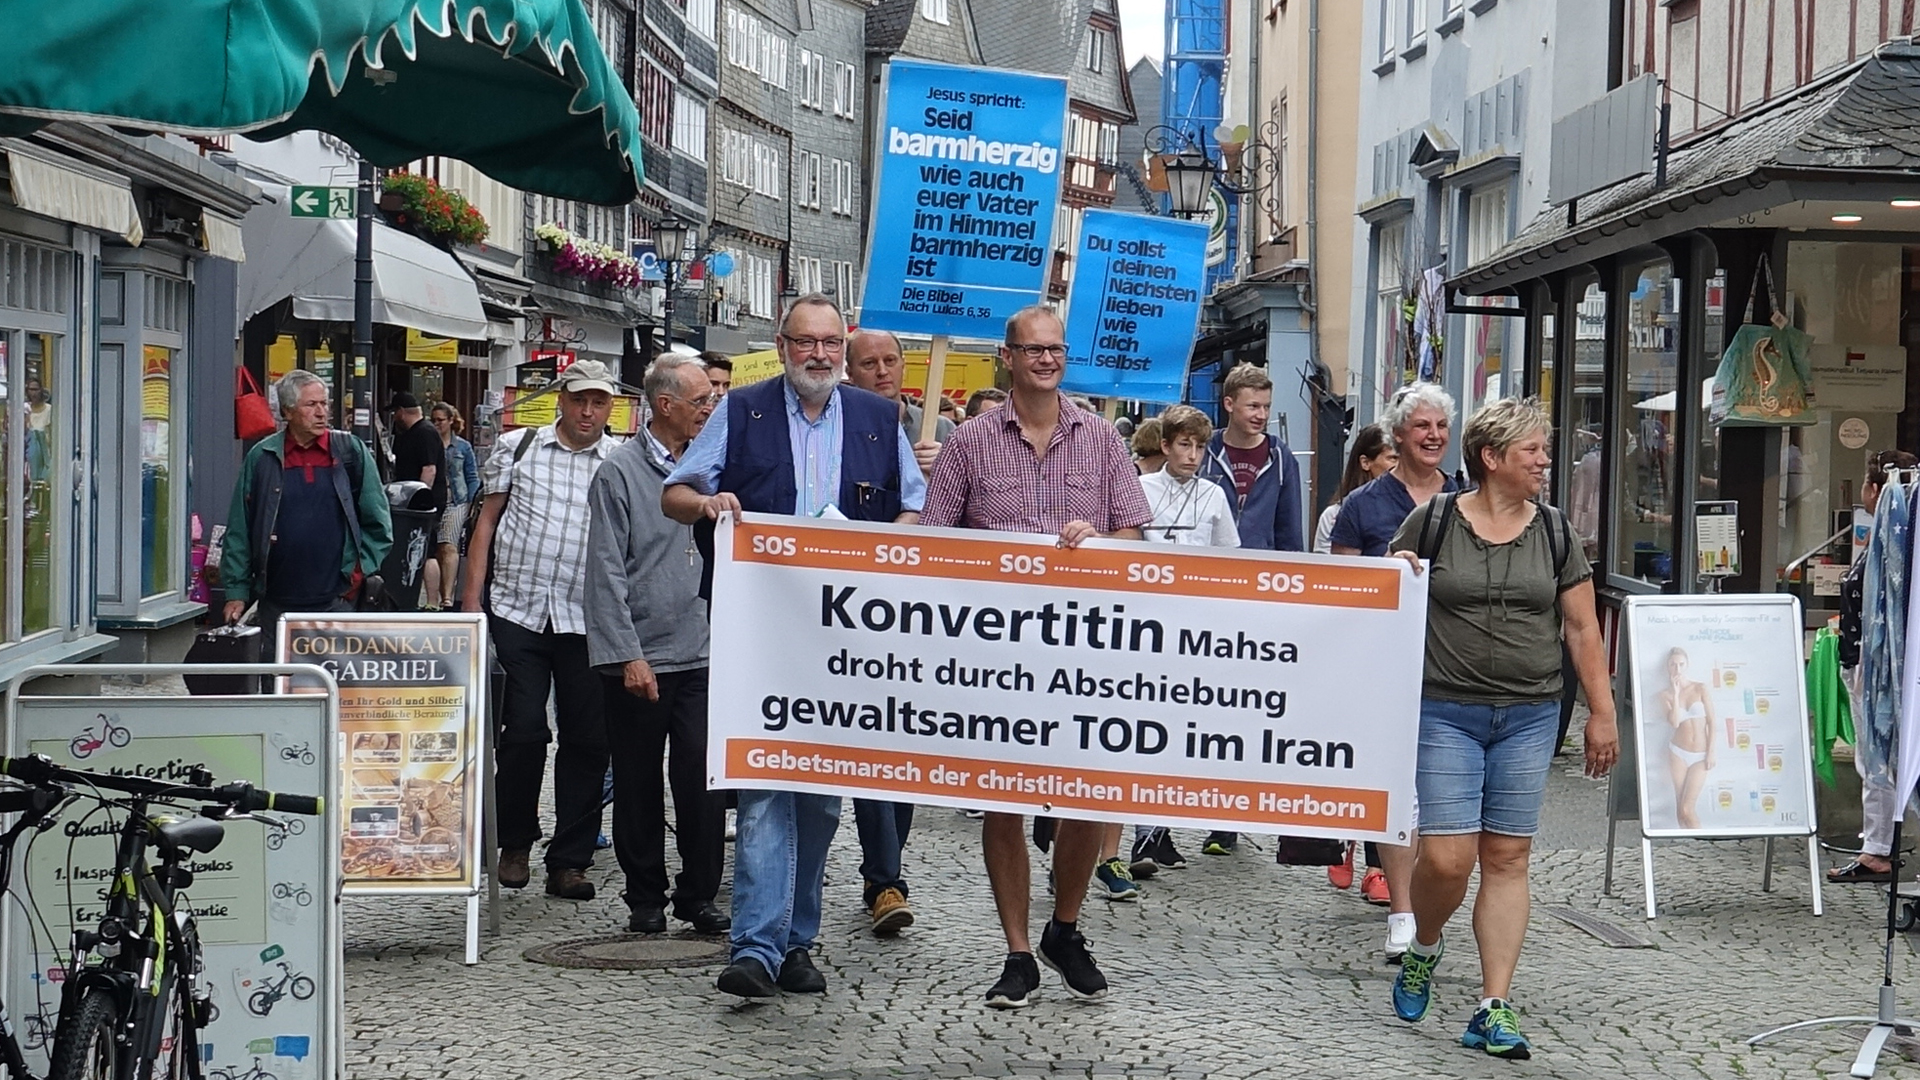 Christen demonstrierten im Juni in Herborn gegen die Abschiebung der Konvertitin Mahsa